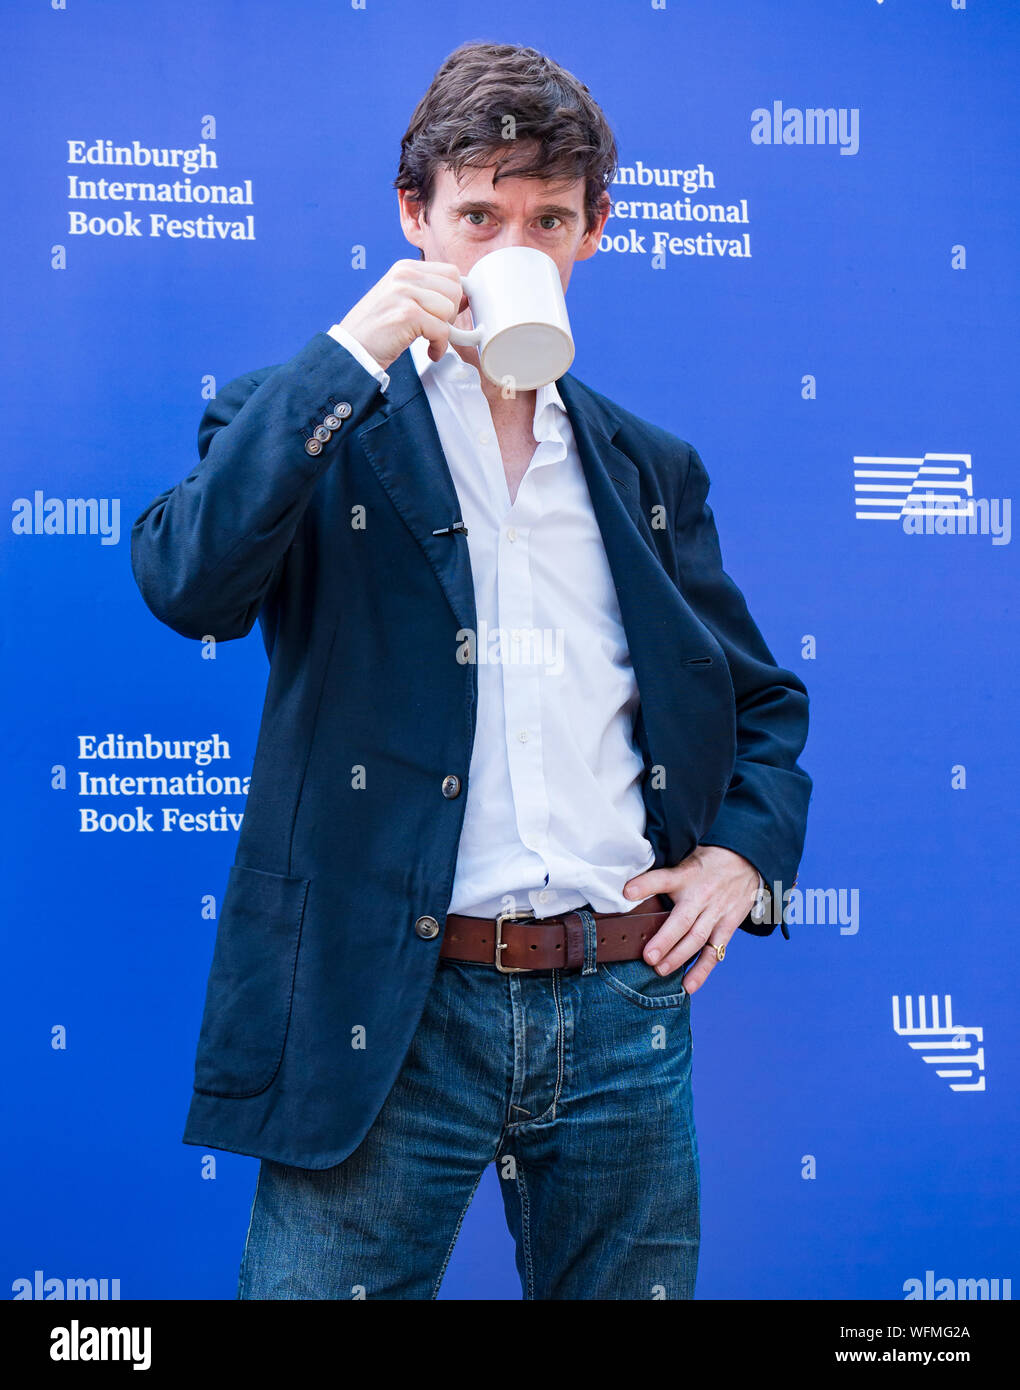 Rory Stewart, politicien conservateur et député, au Edinburgh International Book Festival 2019, Écosse, Royaume-Uni Banque D'Images